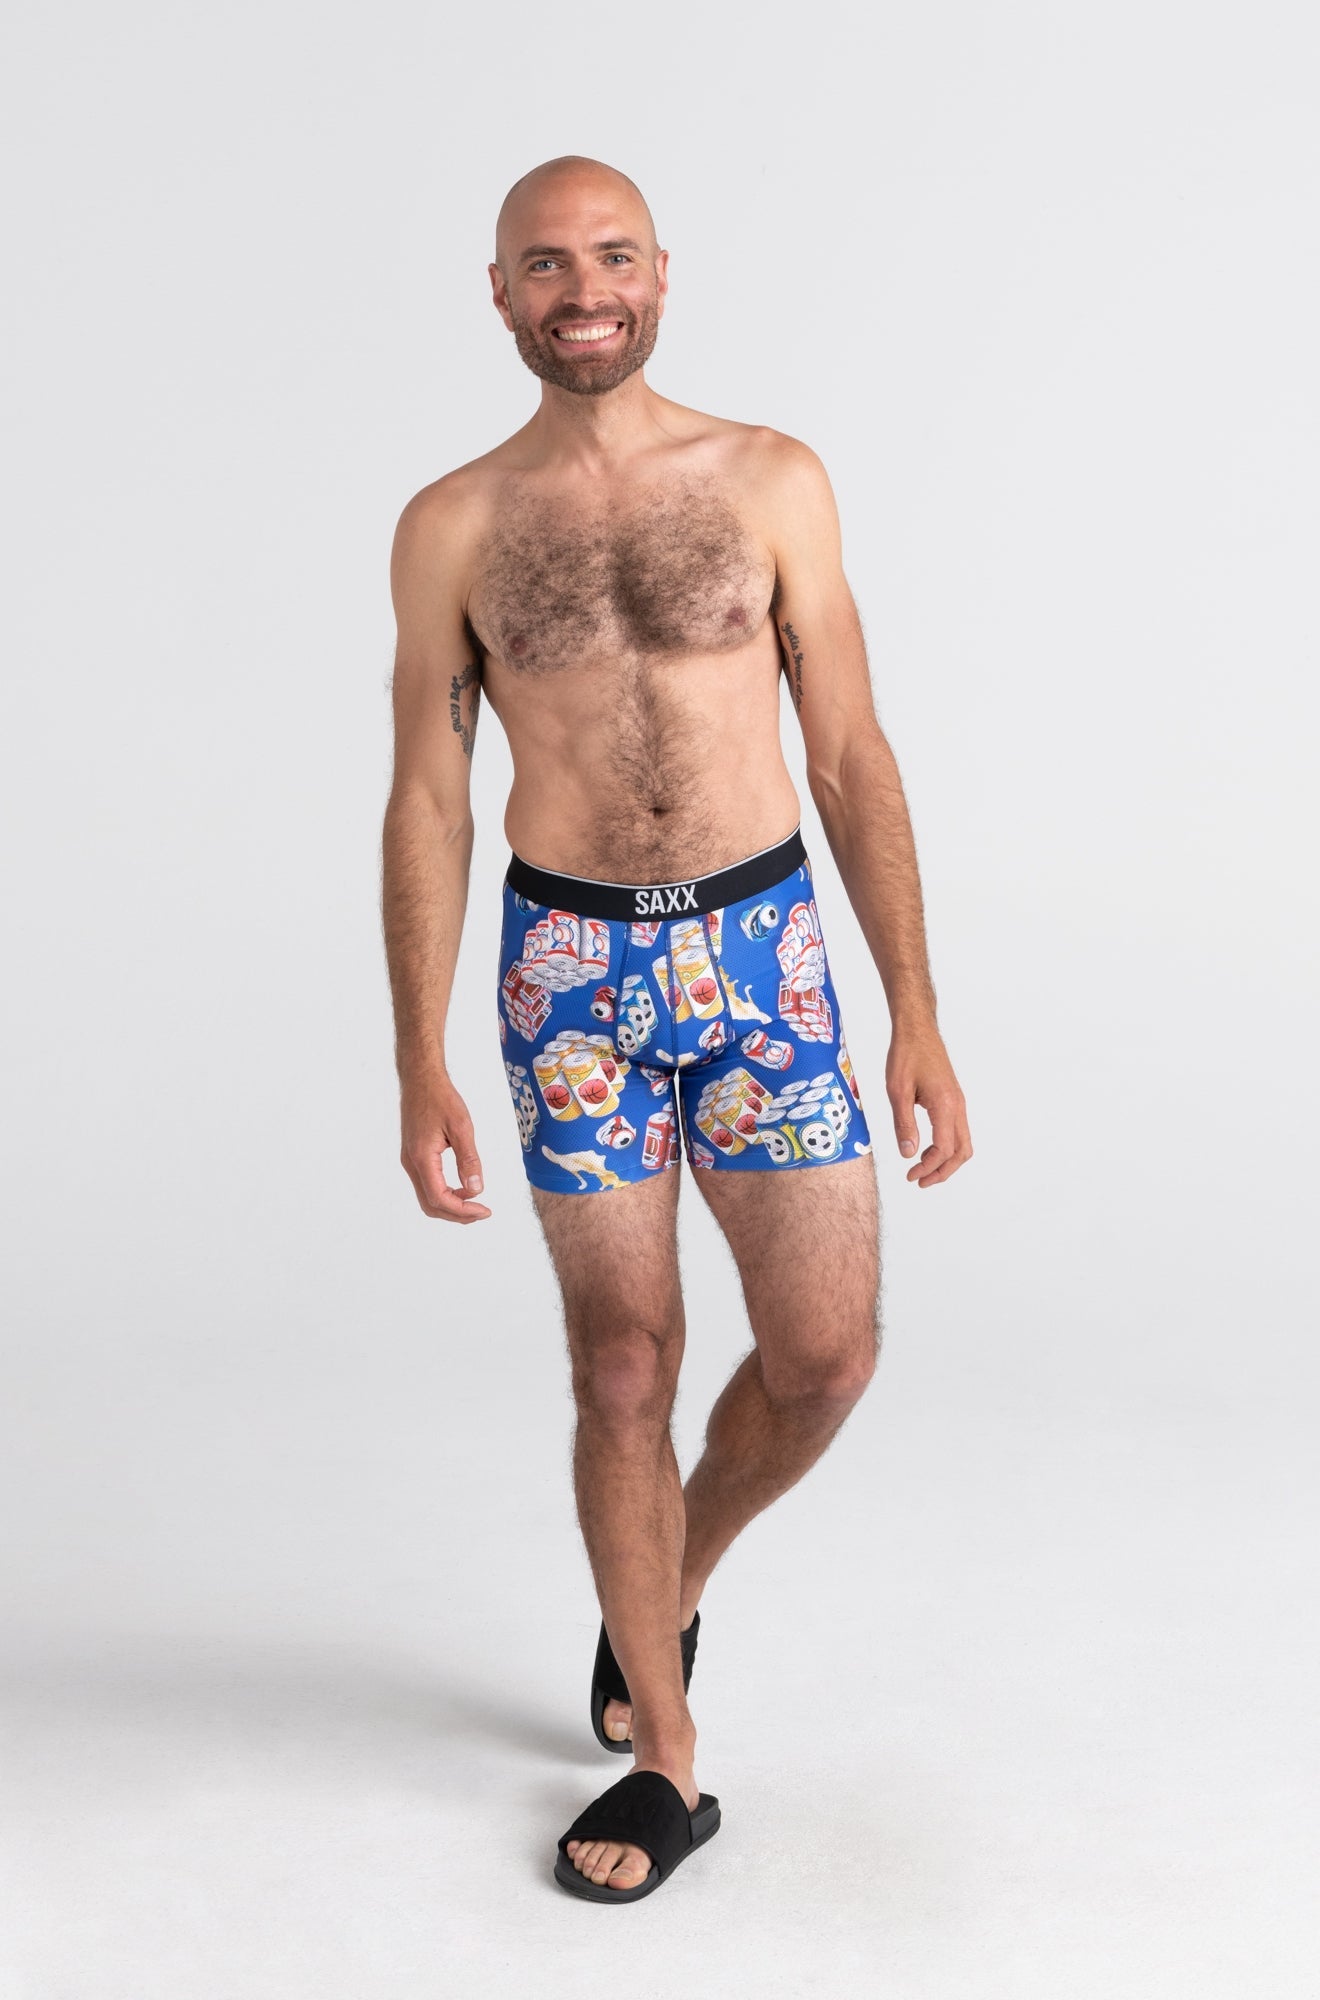 Sous-vêtement pour homme par Saxx | SXBB29 SPS | Machemise.ca, vêtements mode pour hommes